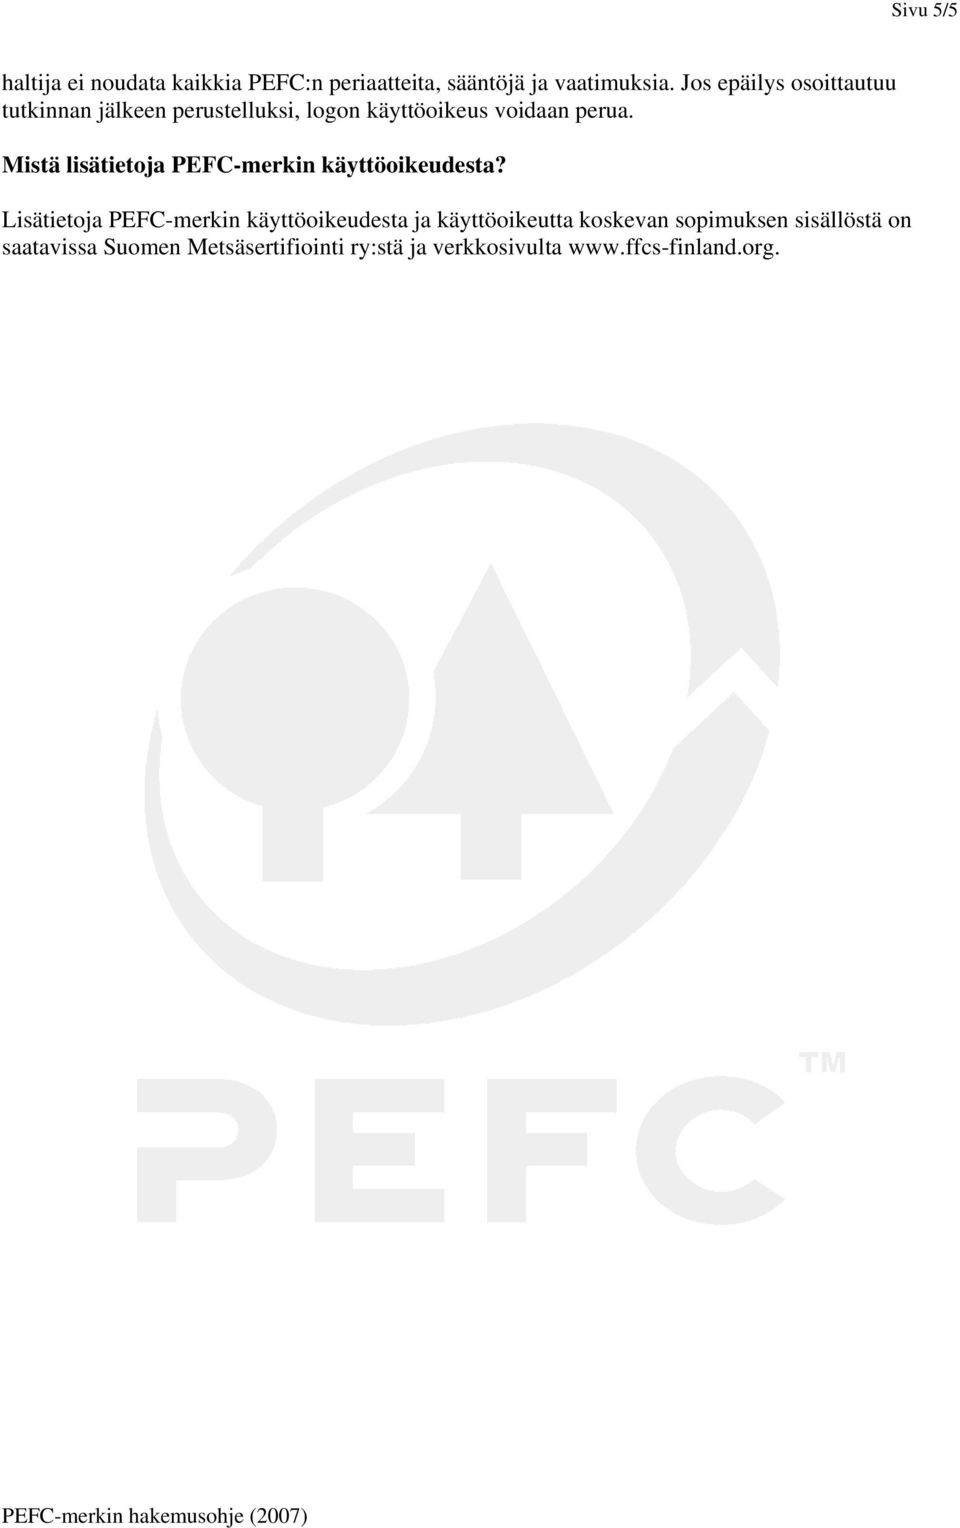 Mistä lisätietoja PEFC-merkin käyttöoikeudesta?